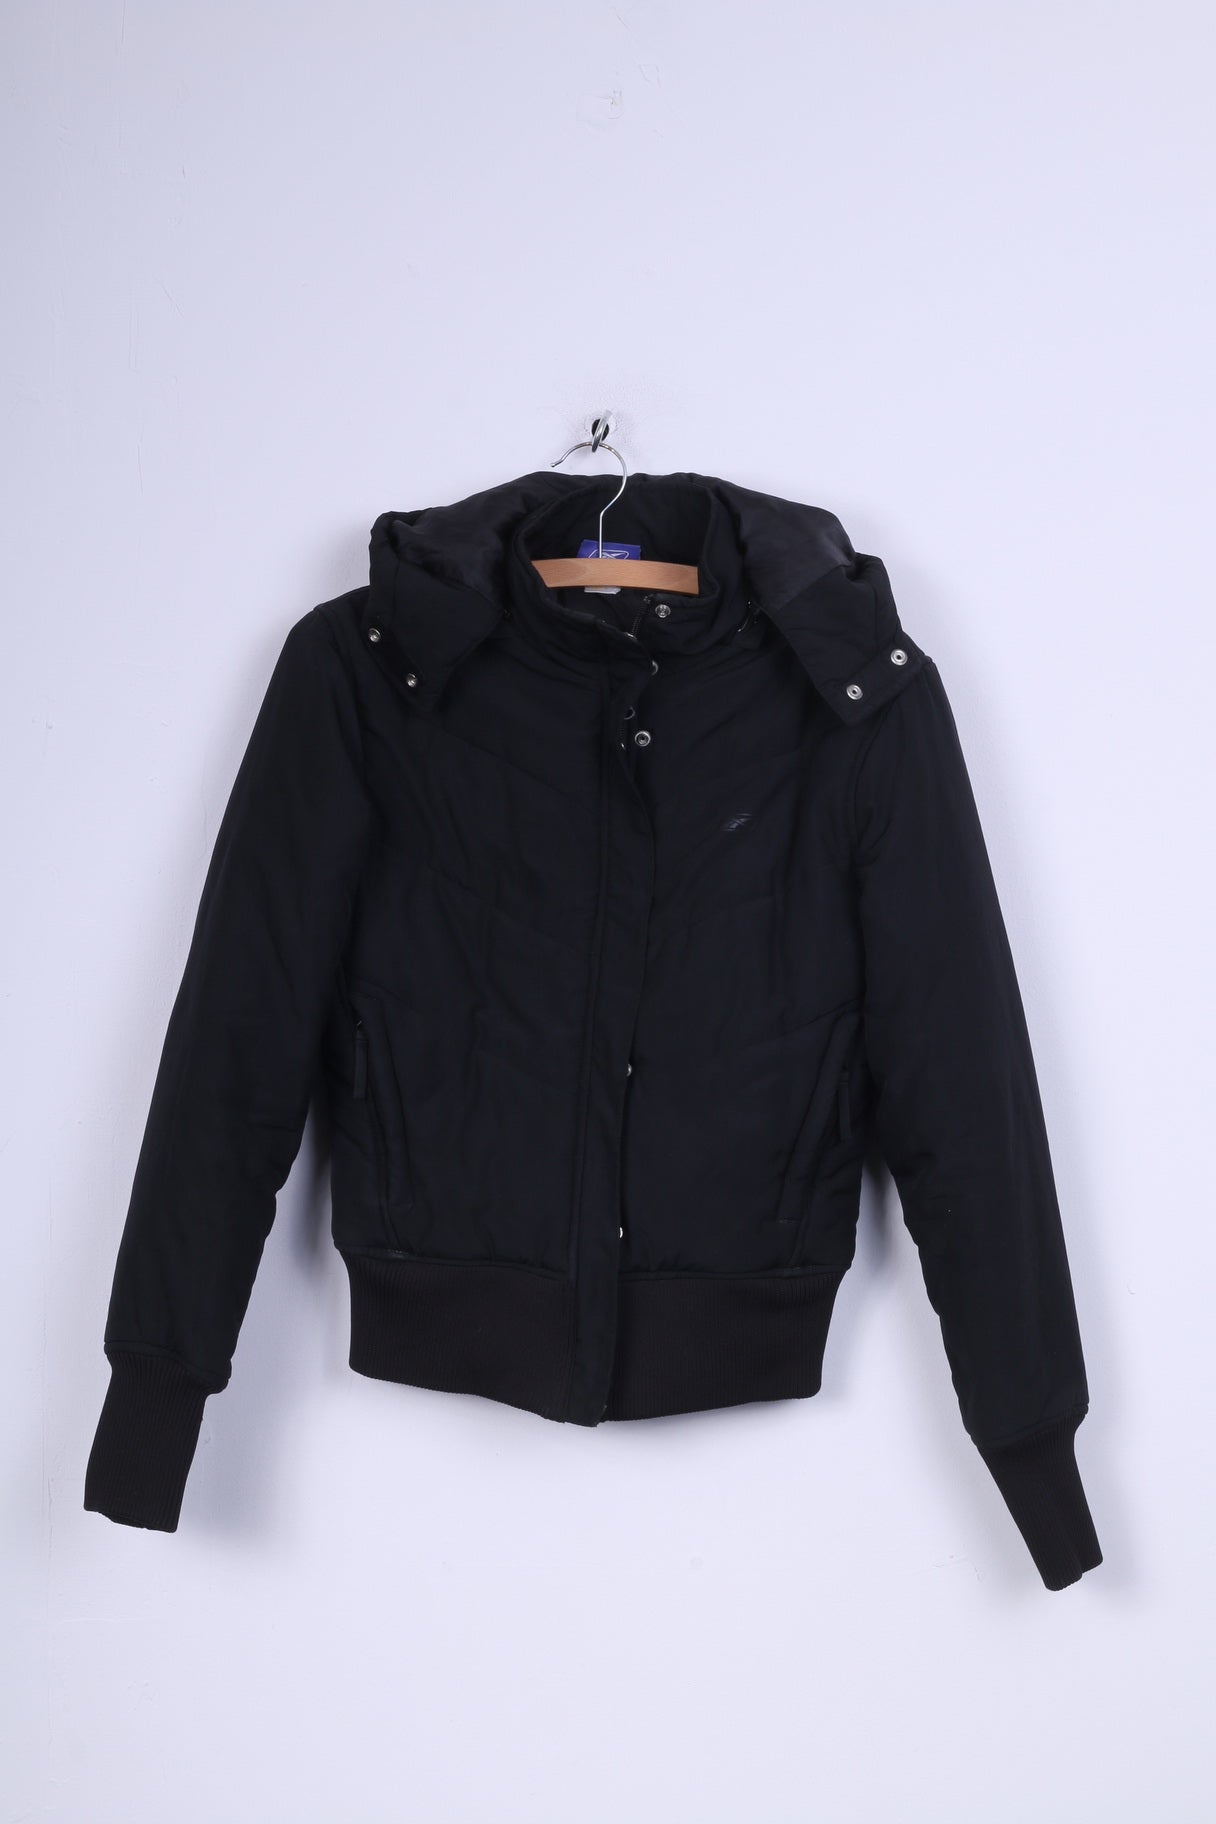 Reebok Womens 36 S Jacket Black Padded Hooded Zip Up Warm Top